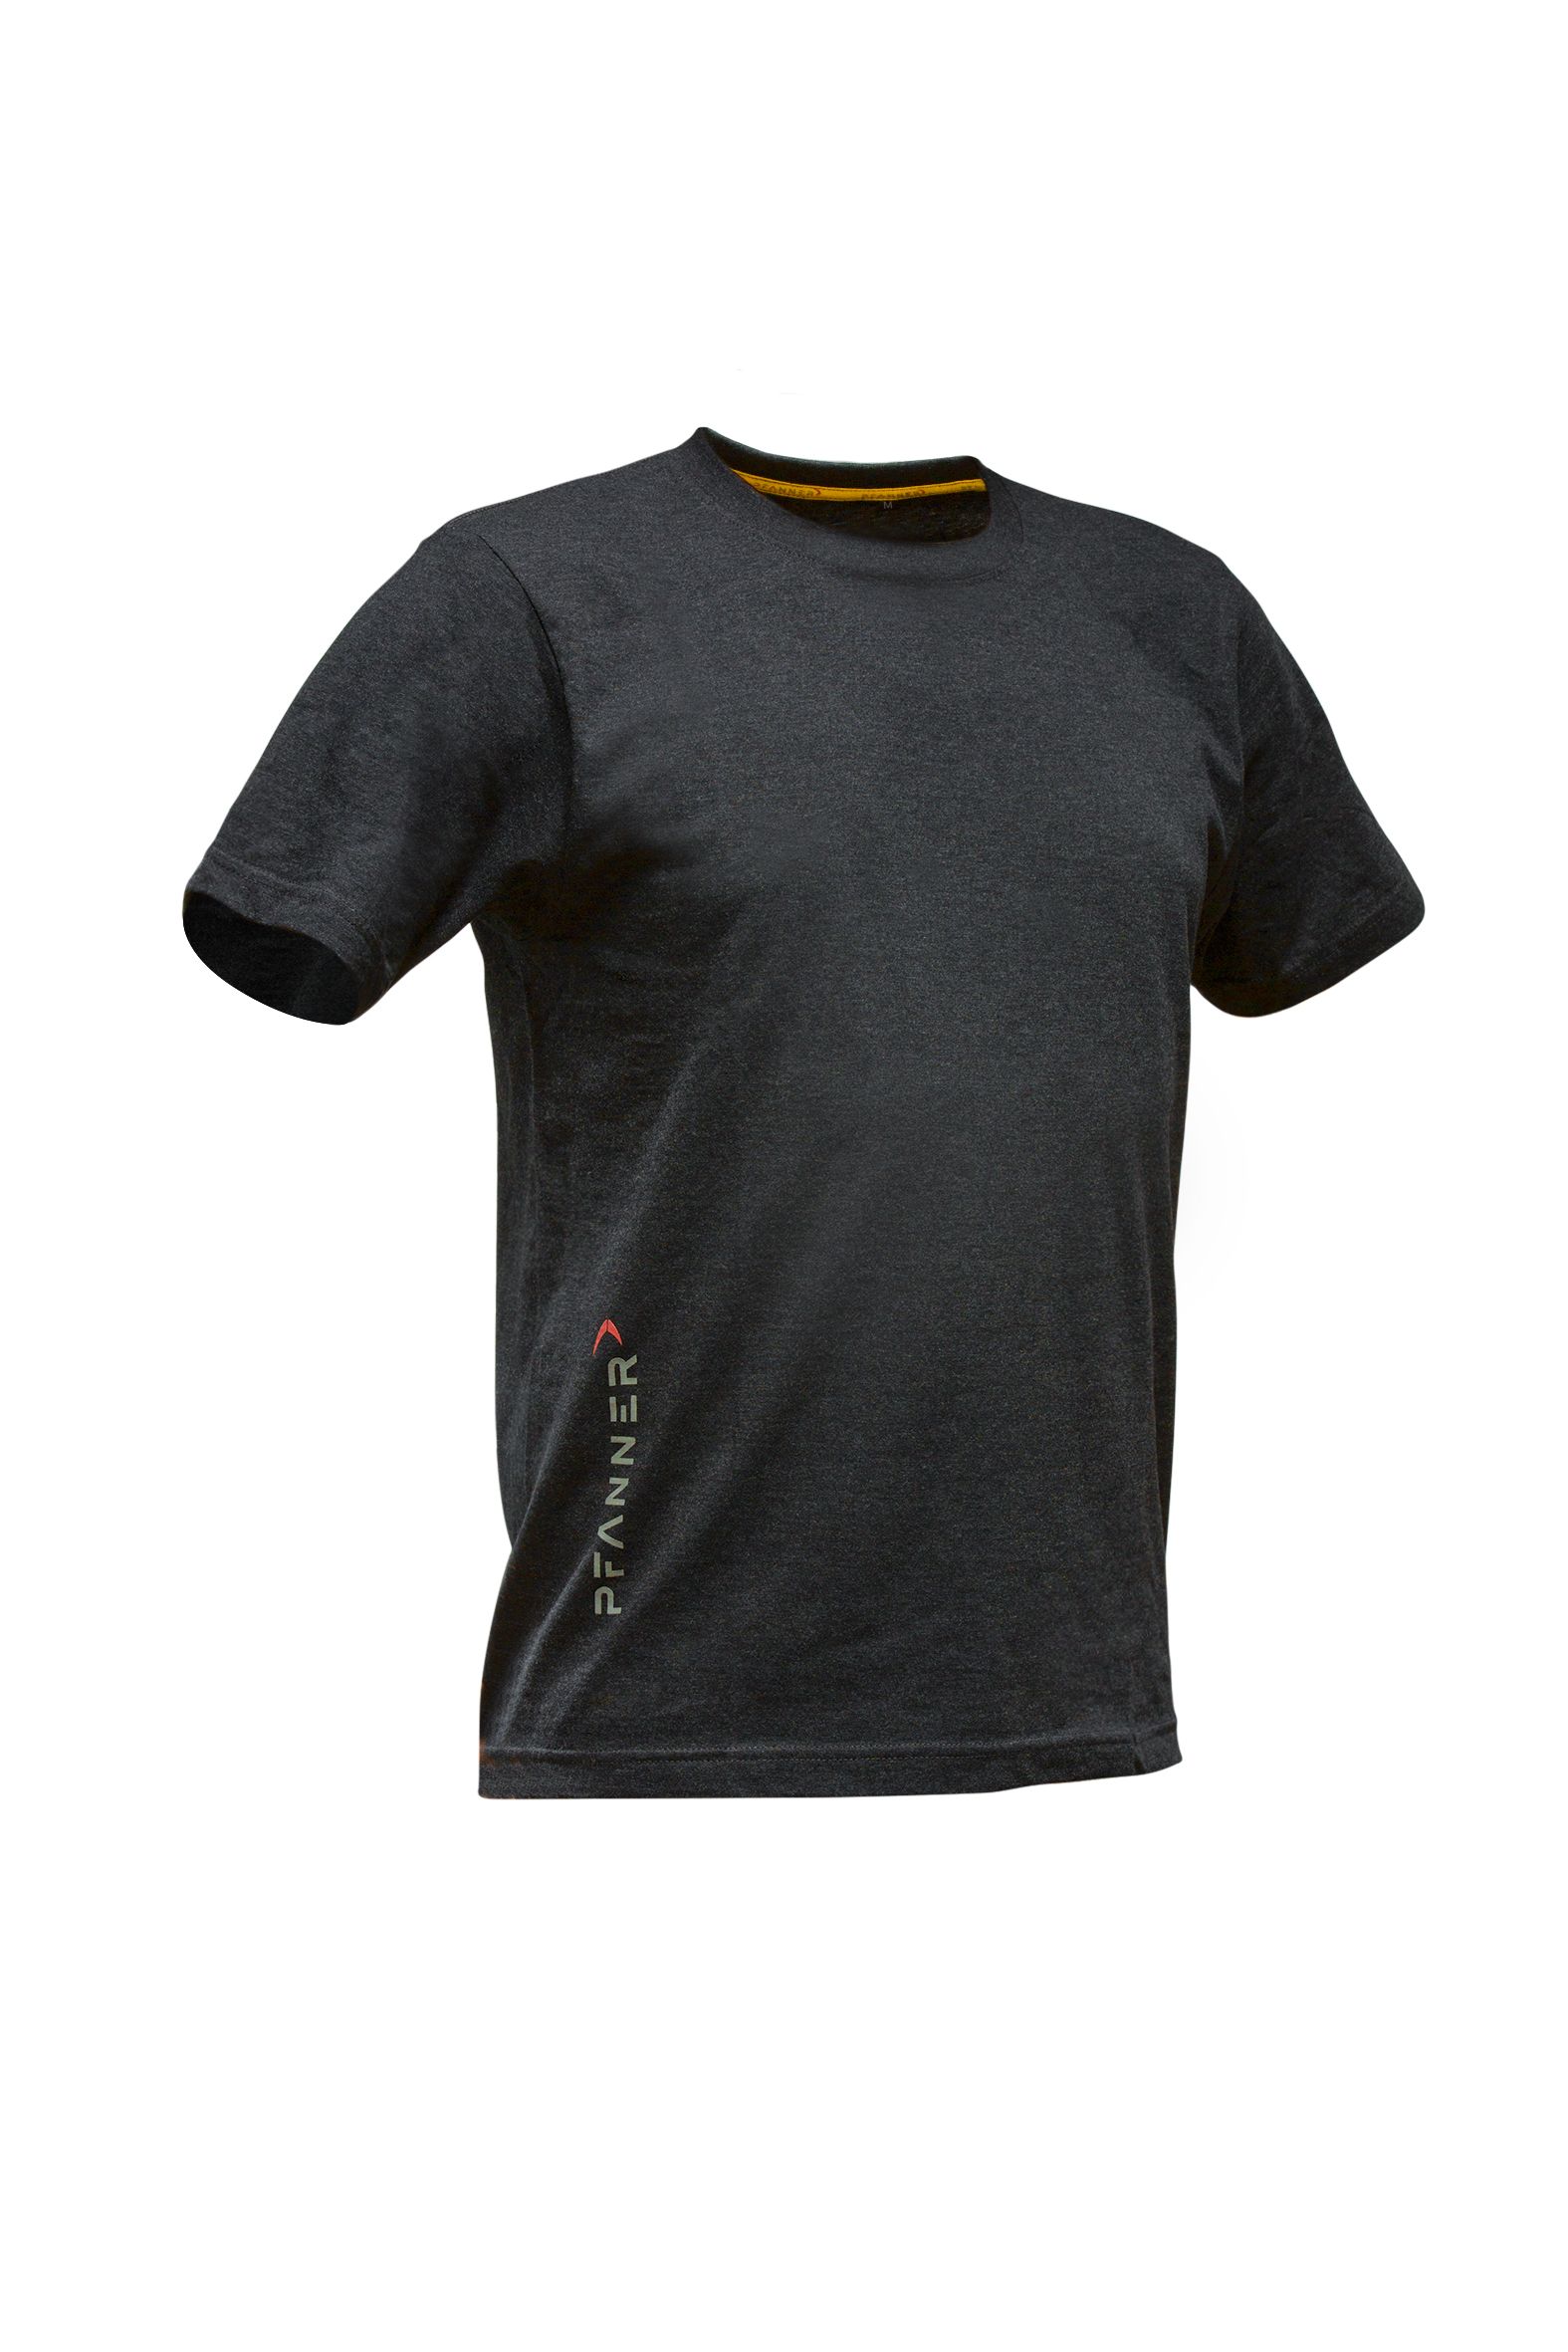 Pfanner T-Shirt Set, KRENGEL Landtechnik Stück 2 